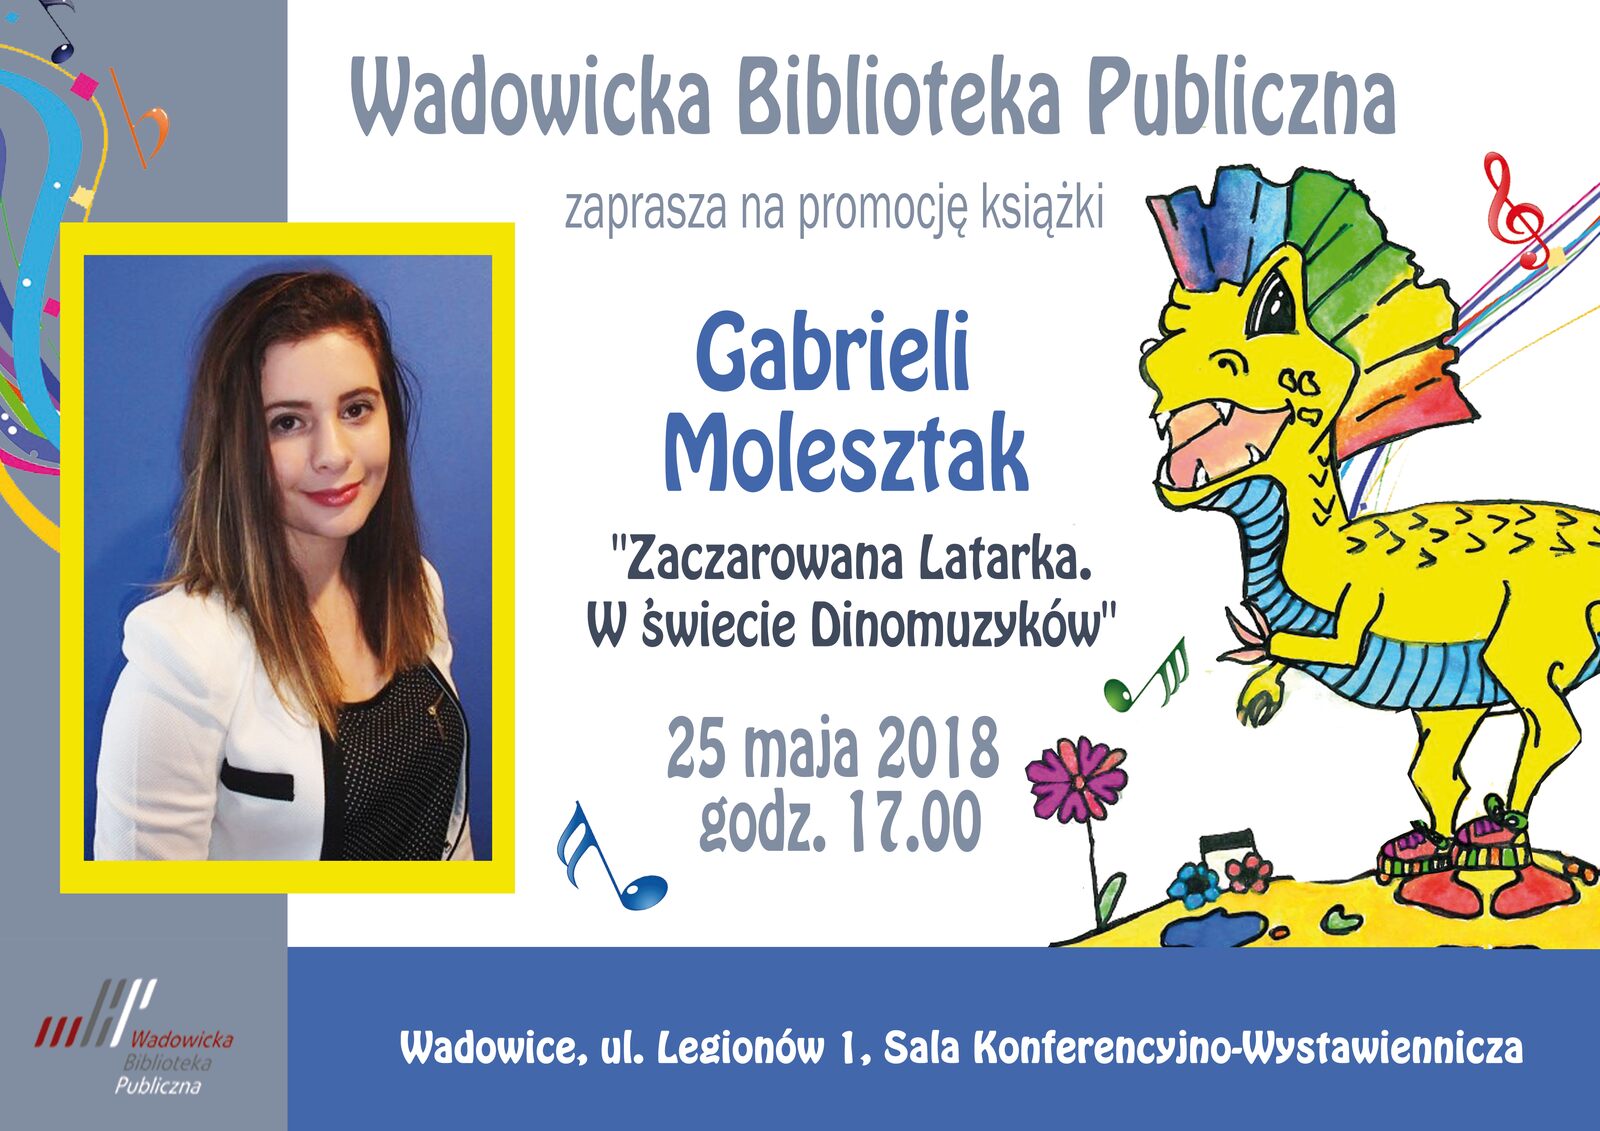 molesztakplakat1 - Spotkanie z Gabrielą Molesztak  - młodą pisarką z Choczni